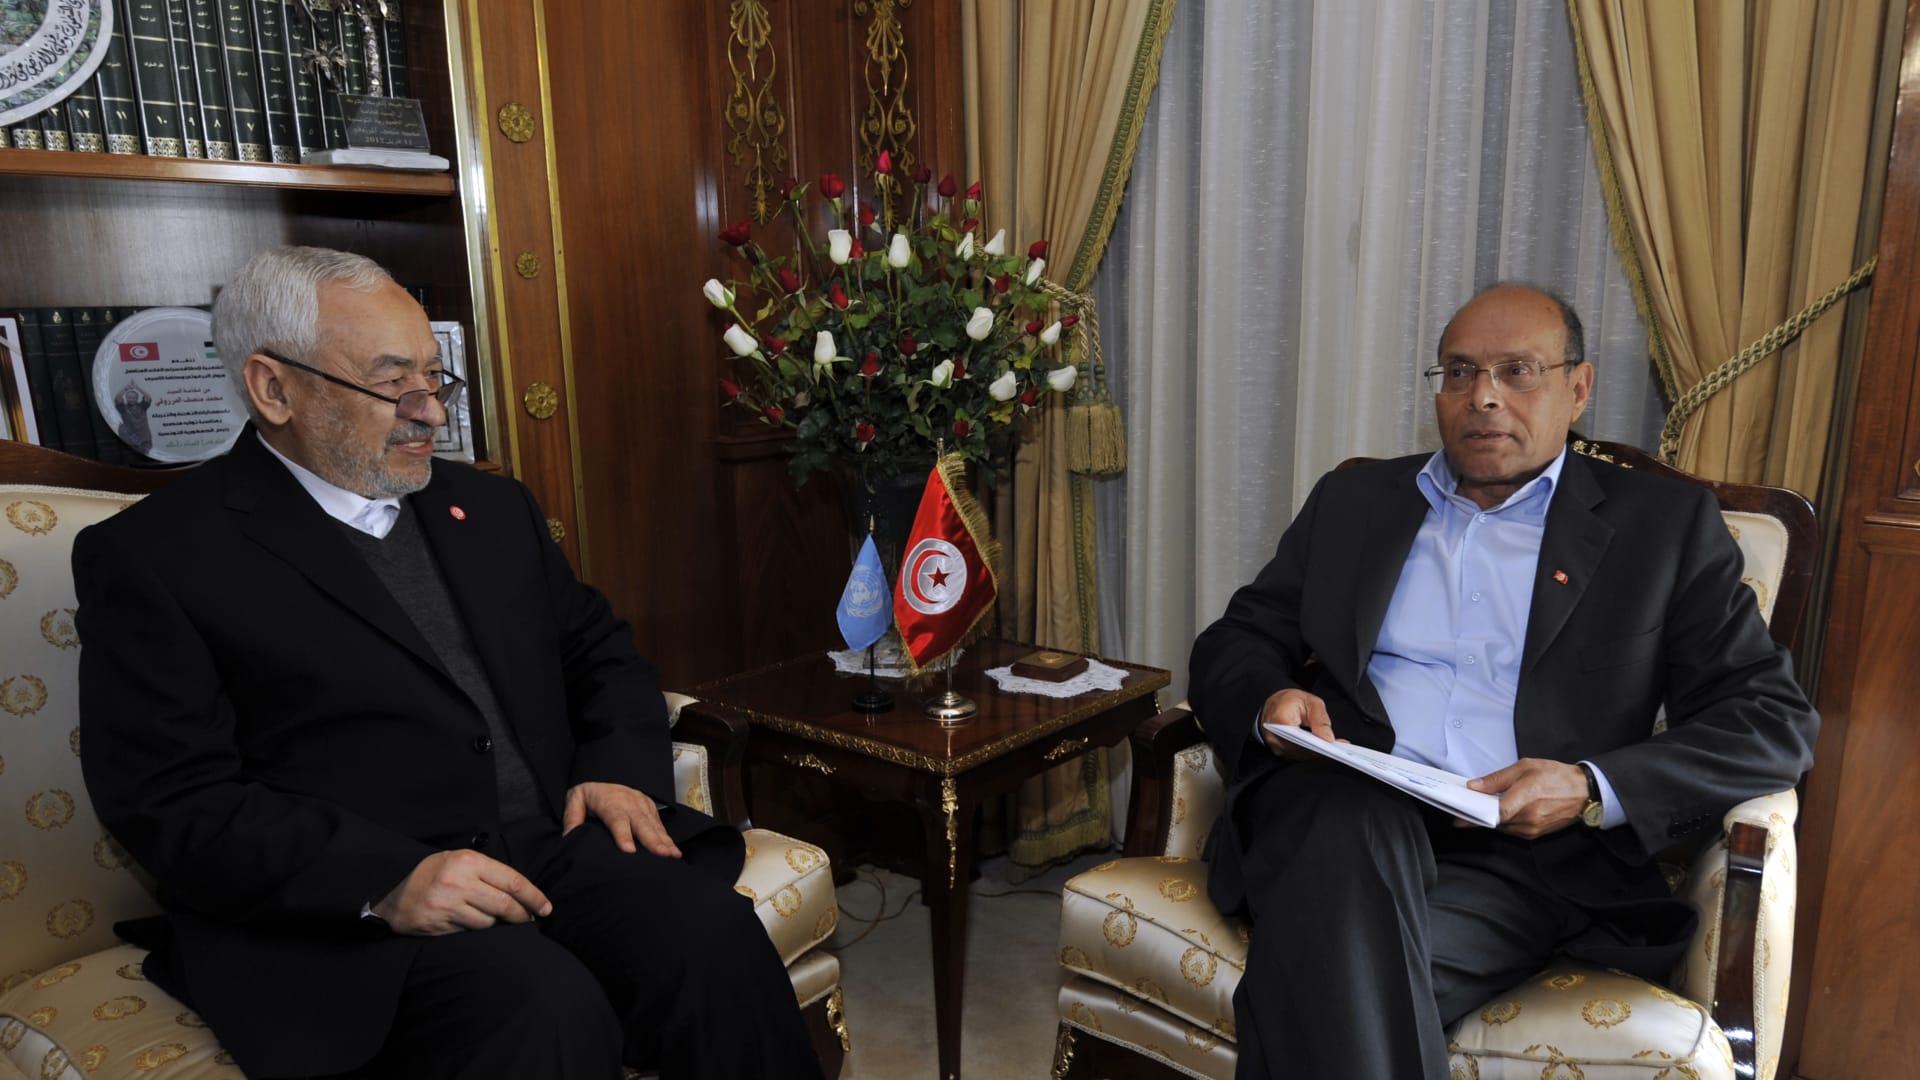 لقاء سابق بين الرئيس التونسي الأسبق منصف المرزوقي وراشد الغنوشي زعيم حزب حركة النهضة 